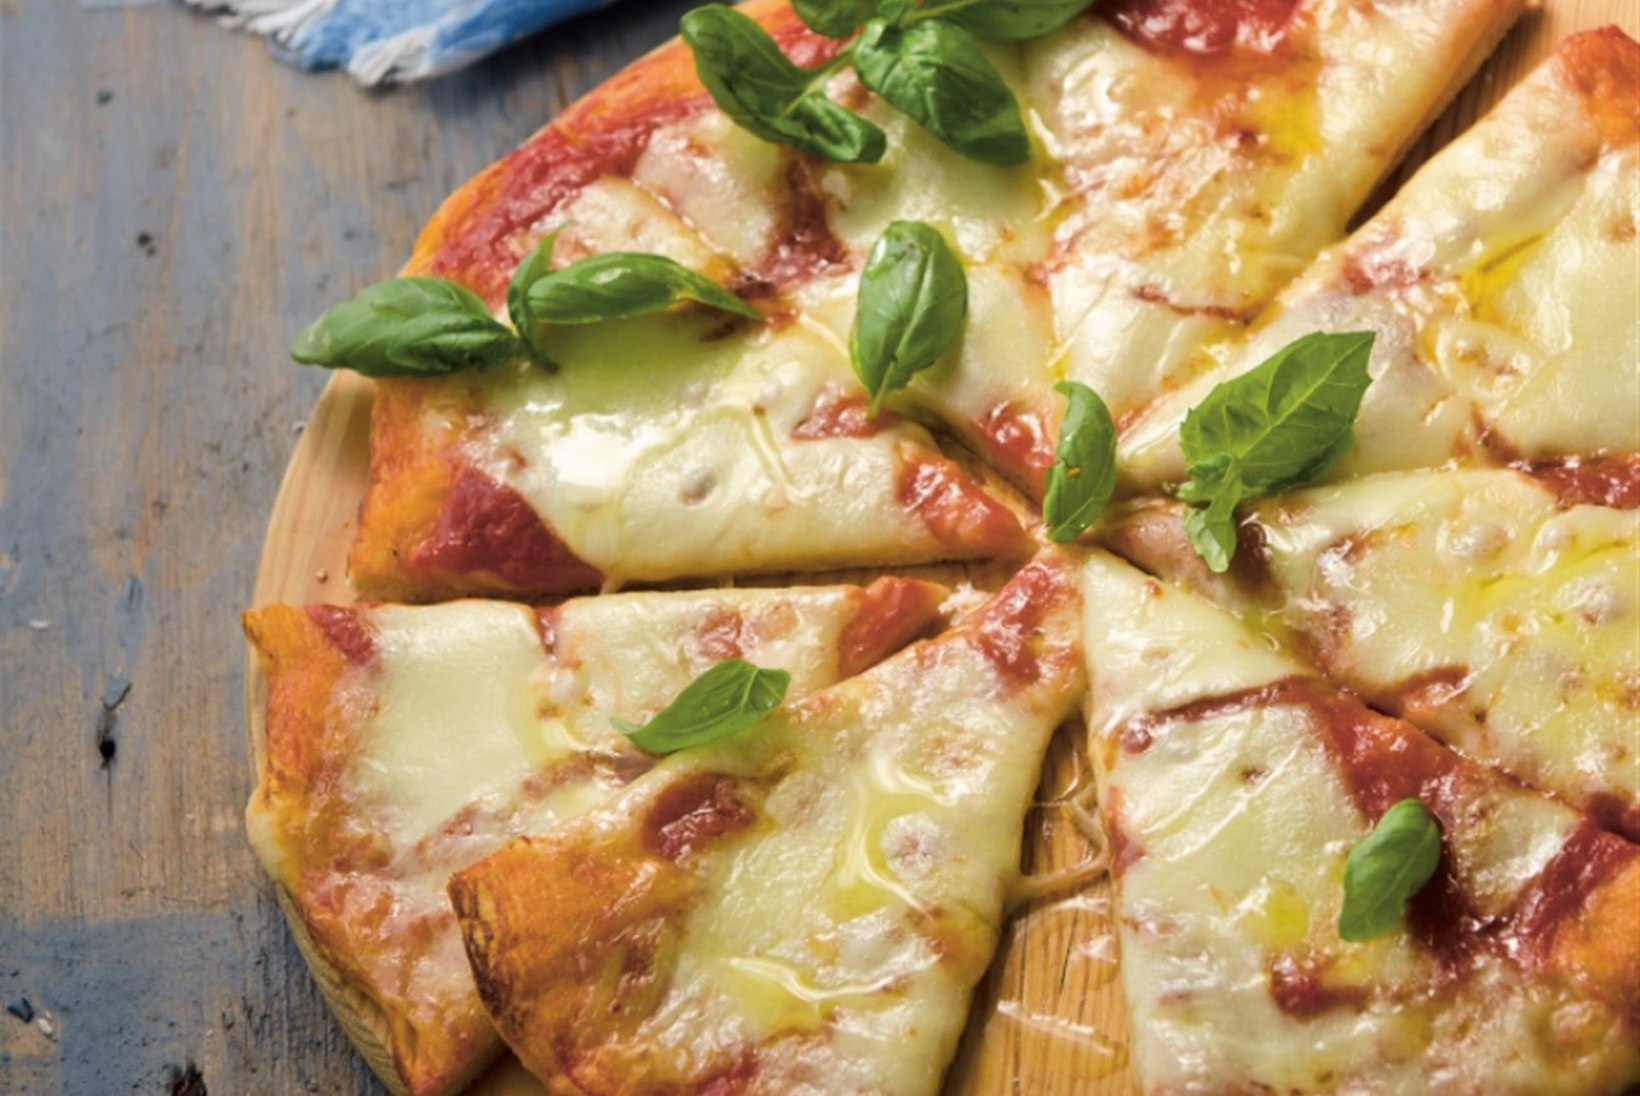 TÄNA ON PITSAPÄEV! 9 kergesti valmivat pitsat igale maitsele